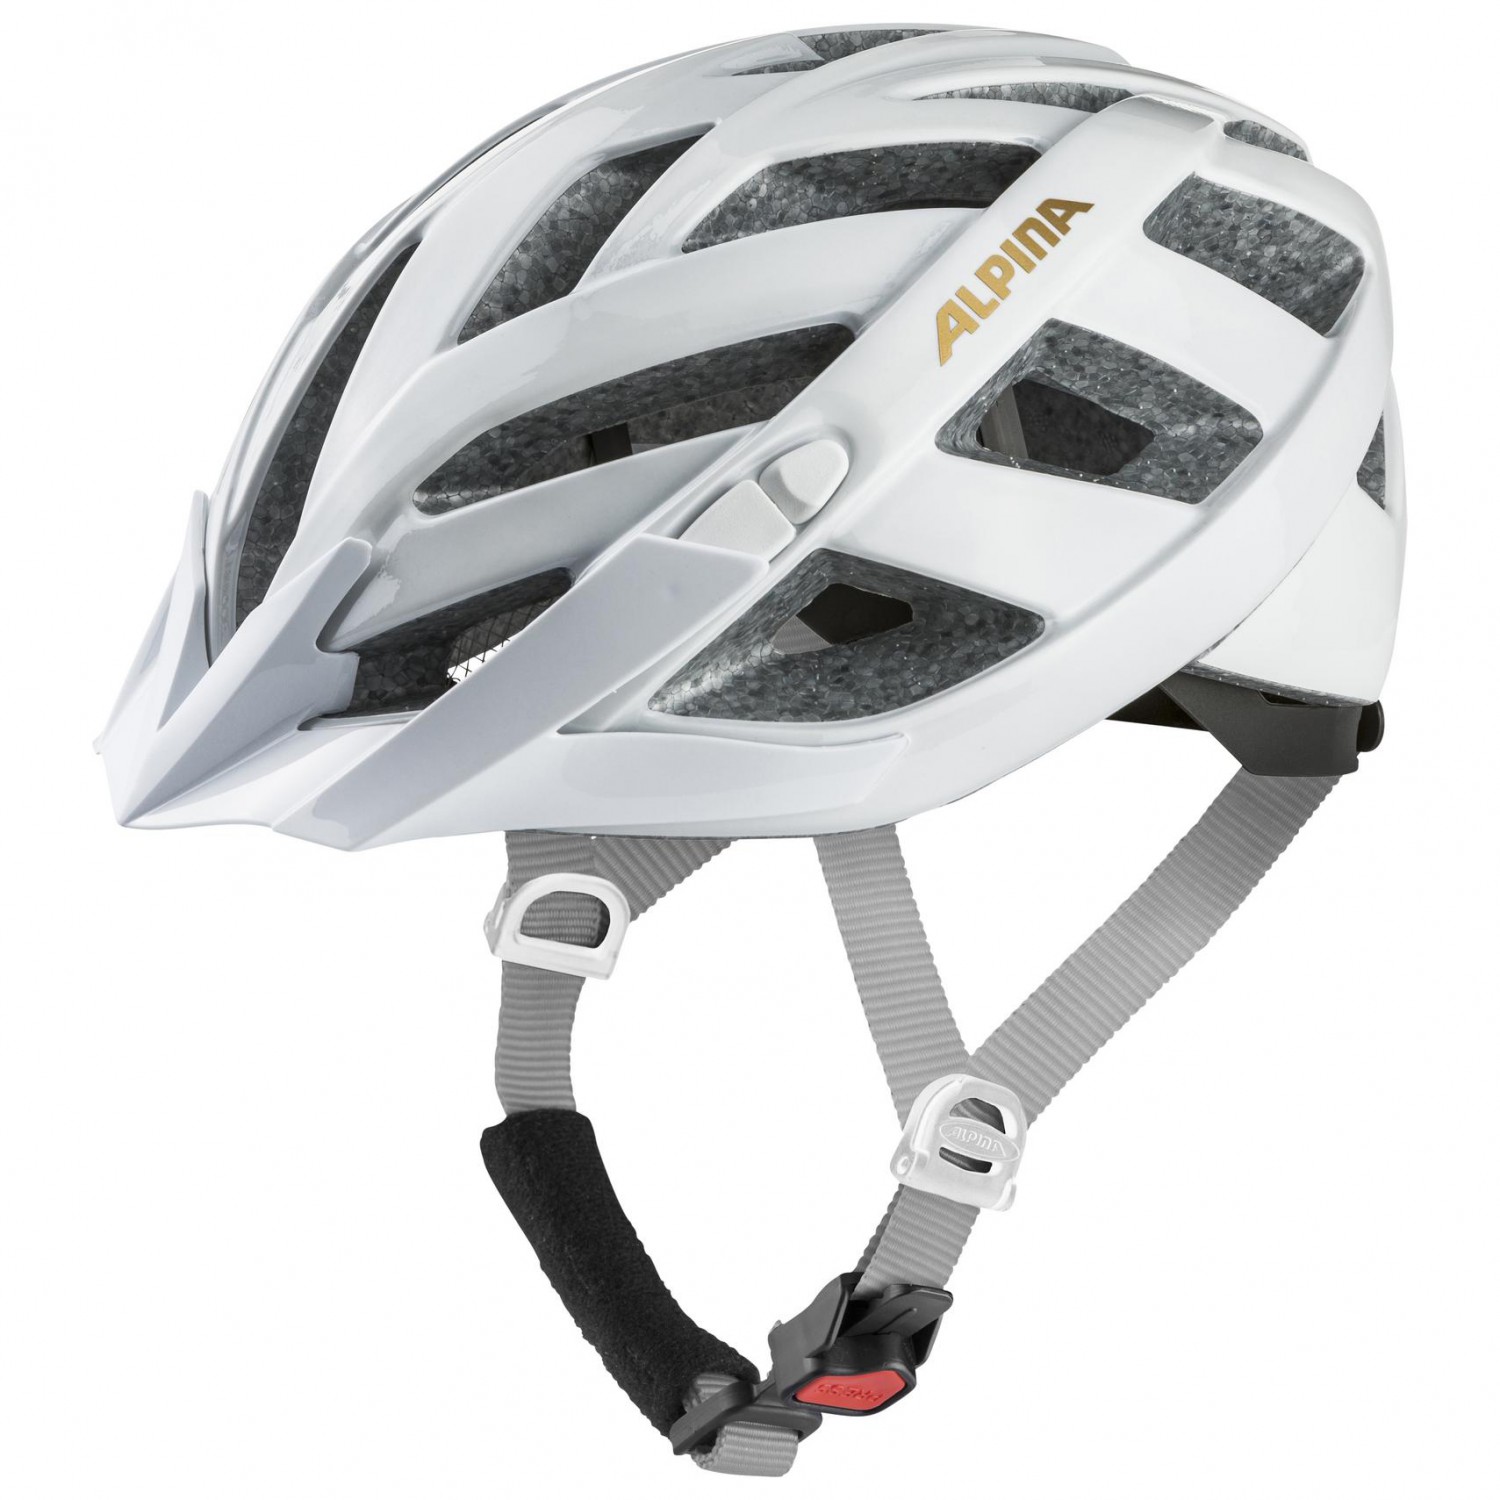 Велосипедный шлем Alpina Panoma Classic, цвет White/Prosecco